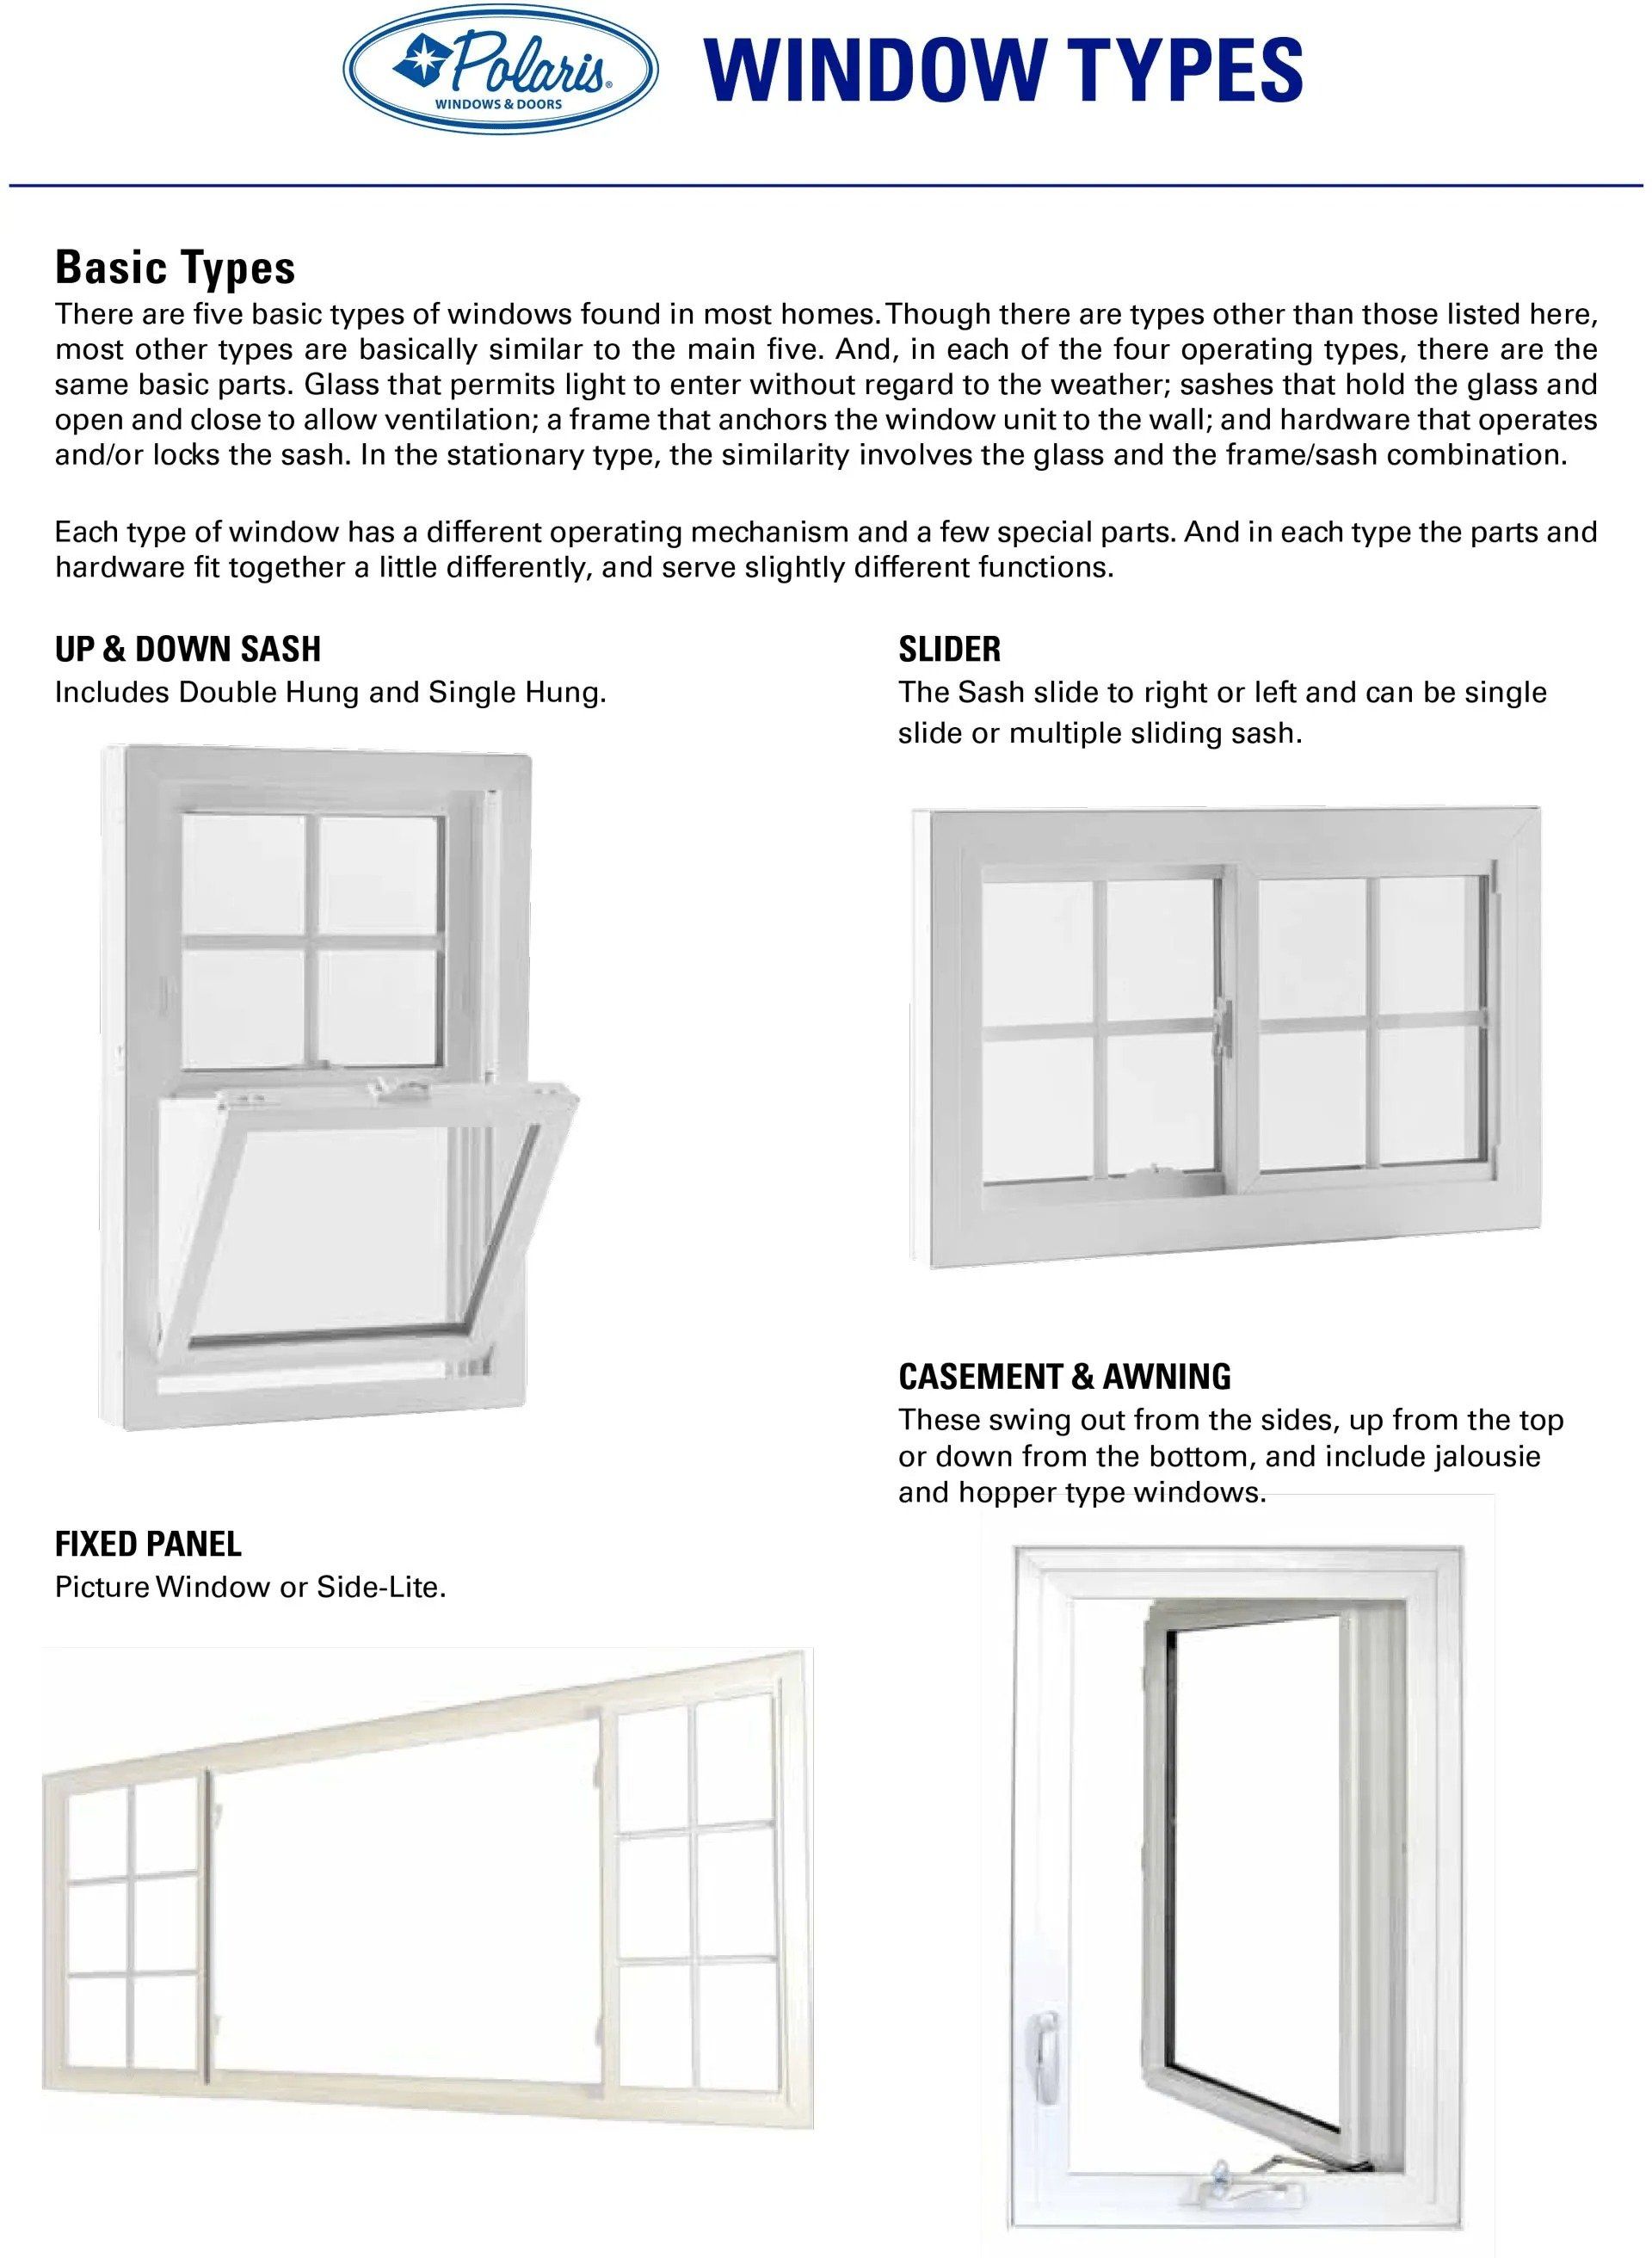 Basic window types